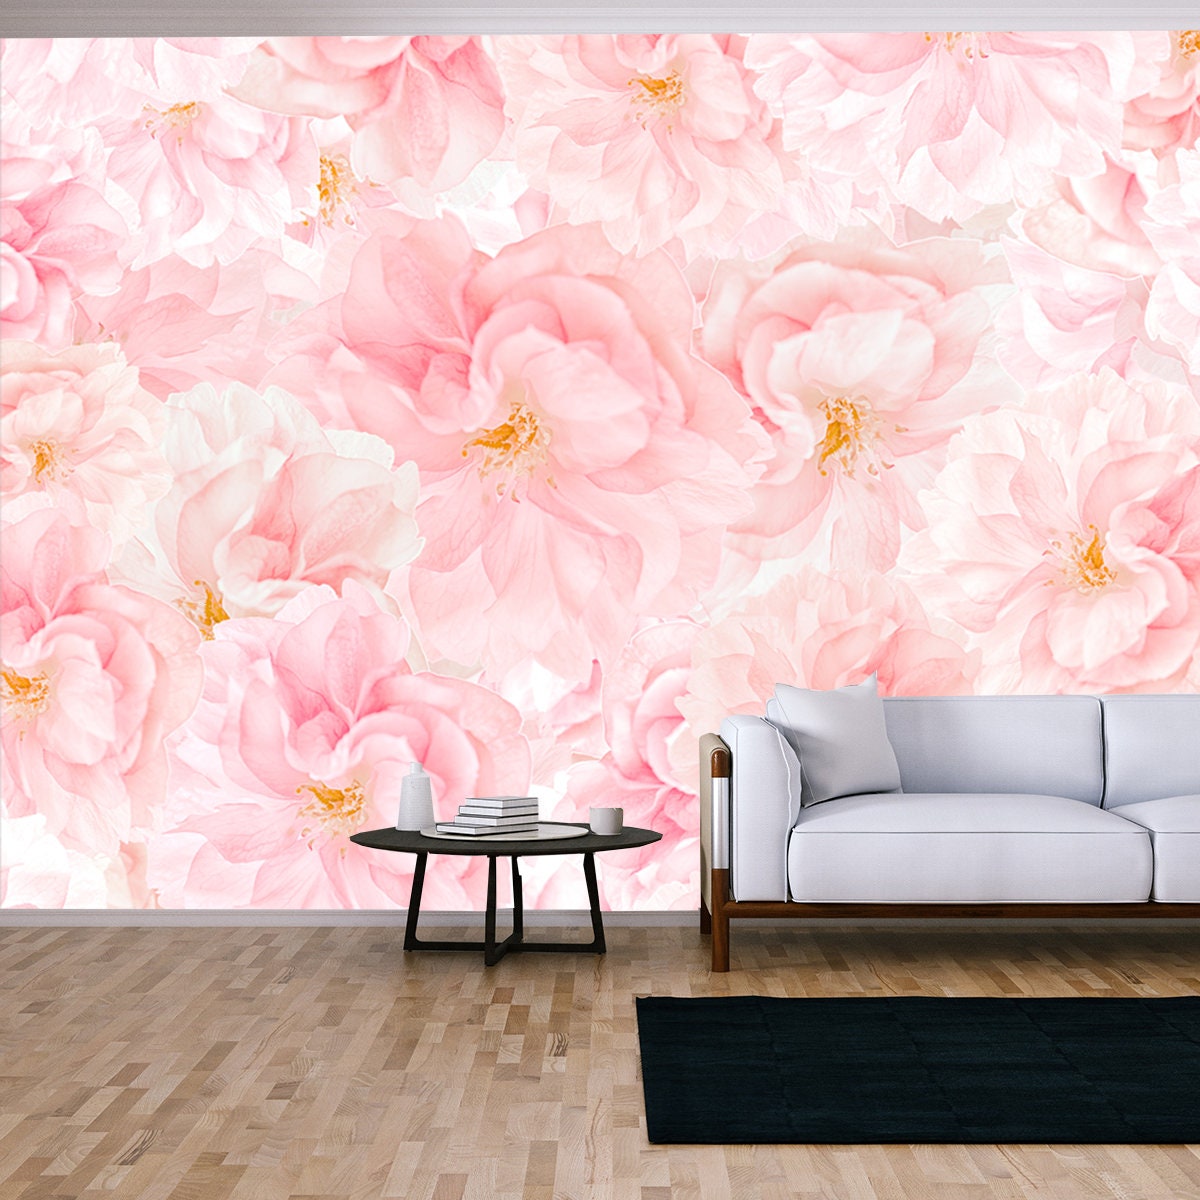 Sakura Flower Blossoms Background Wallpaper Living Room Mural